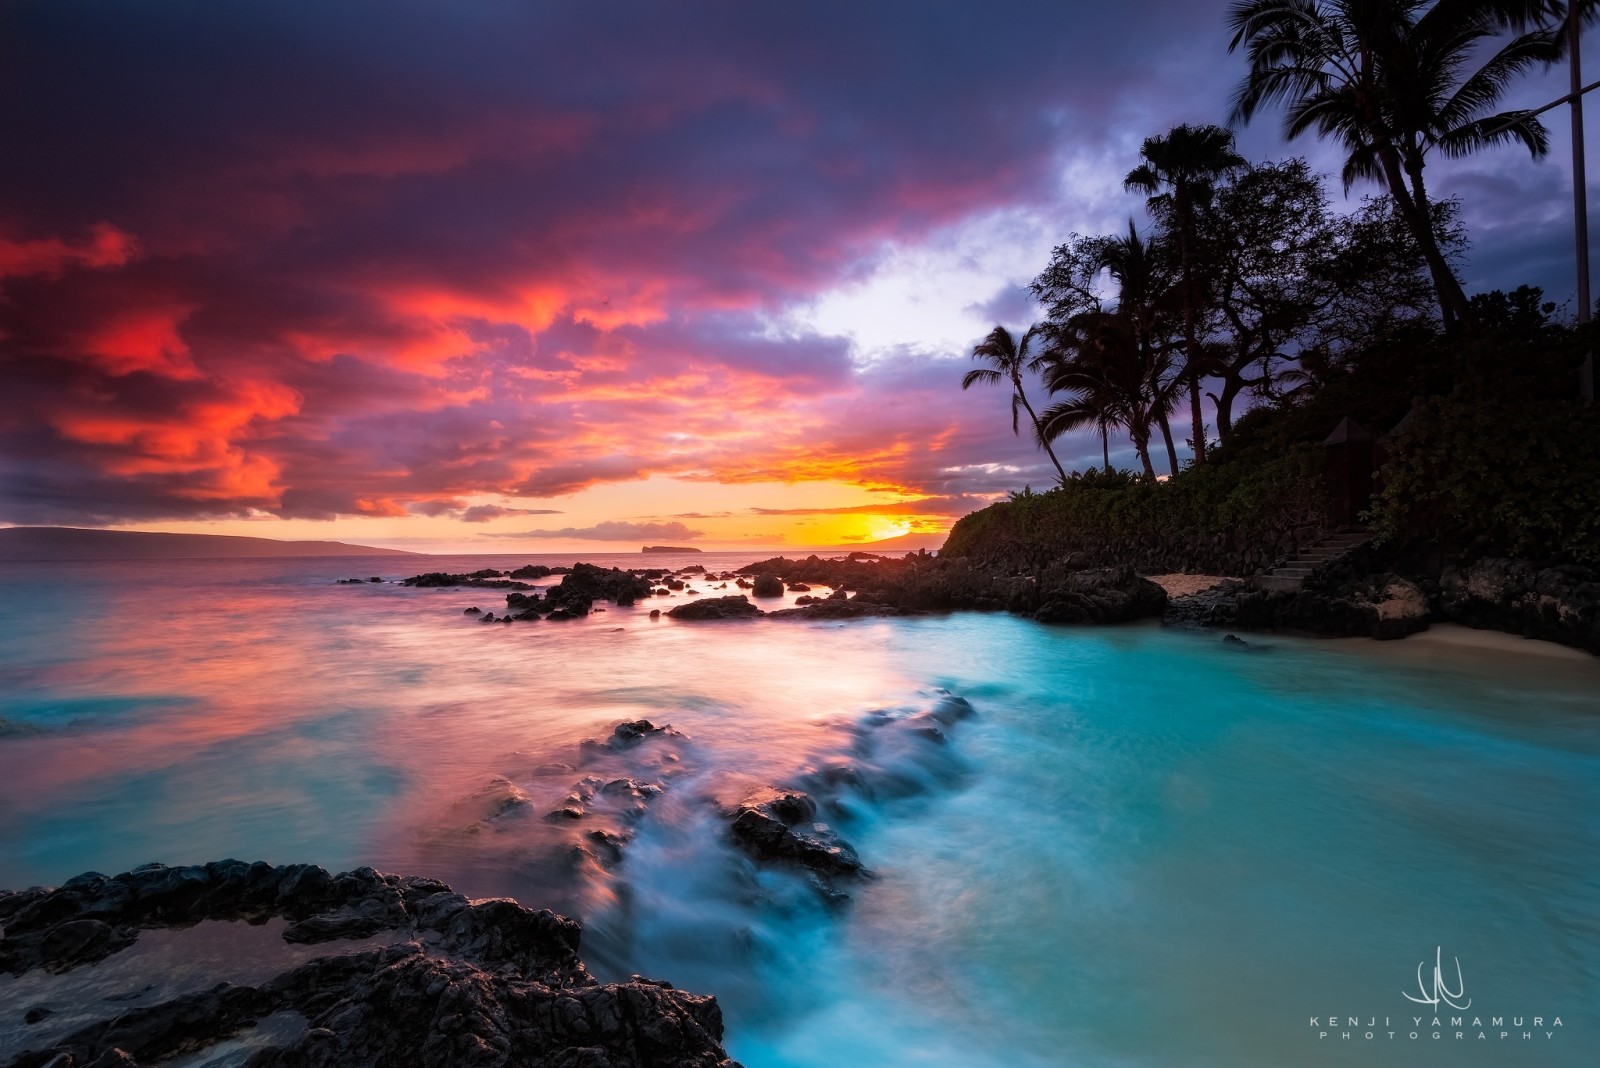 matahari terbenam, juru potret, pohon-pohon palem, Kenji Yamamura, Hawaii, Pantai Rahasia, otrov Maui